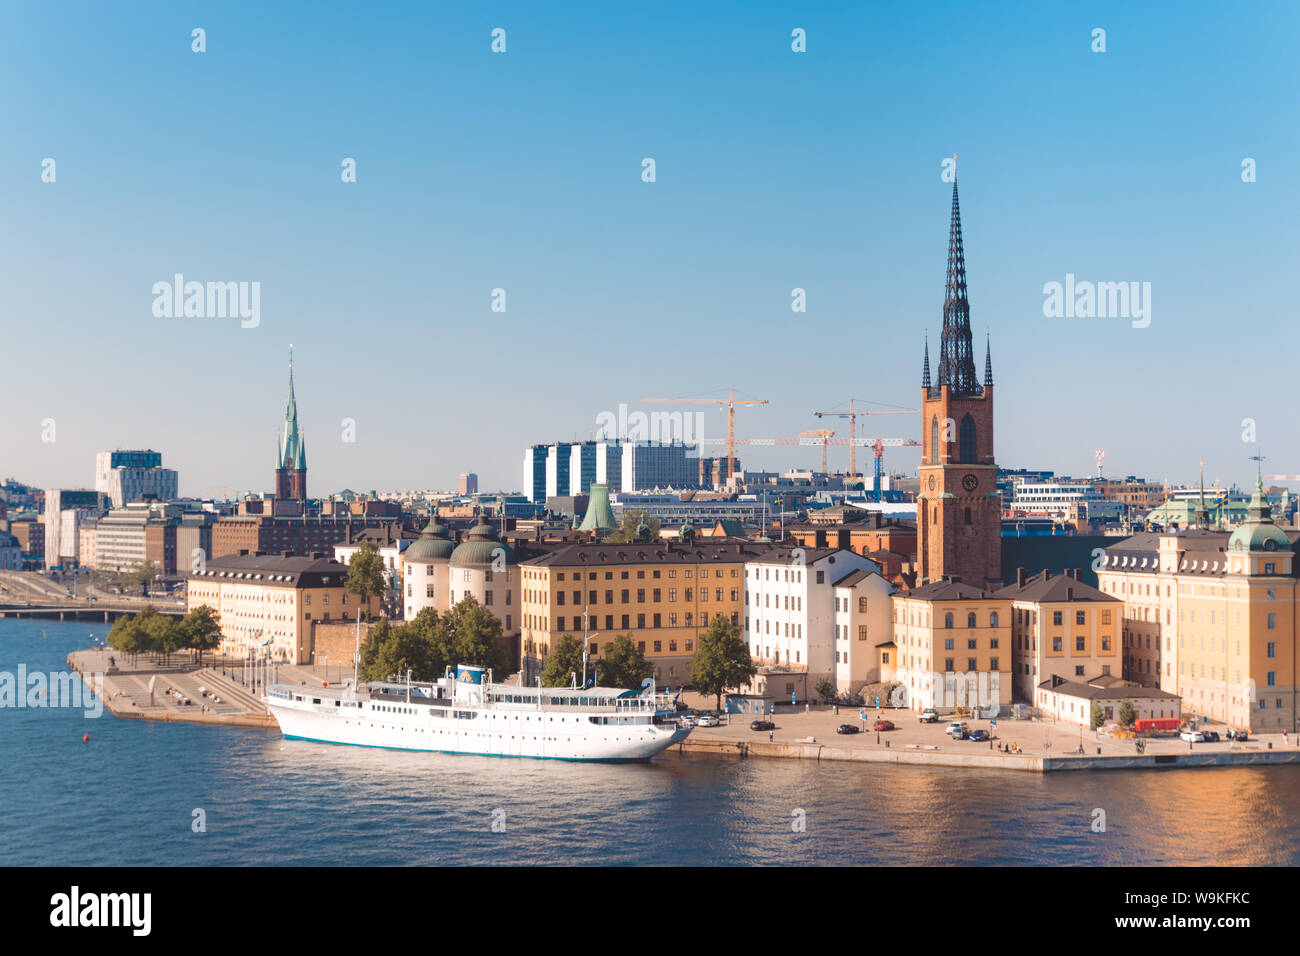 Turismo e concetto di viaggio. Cityscape immagine dell'architettura del centro storico molo nel quartiere Södermalm di Stoccolma, Svezia Foto Stock